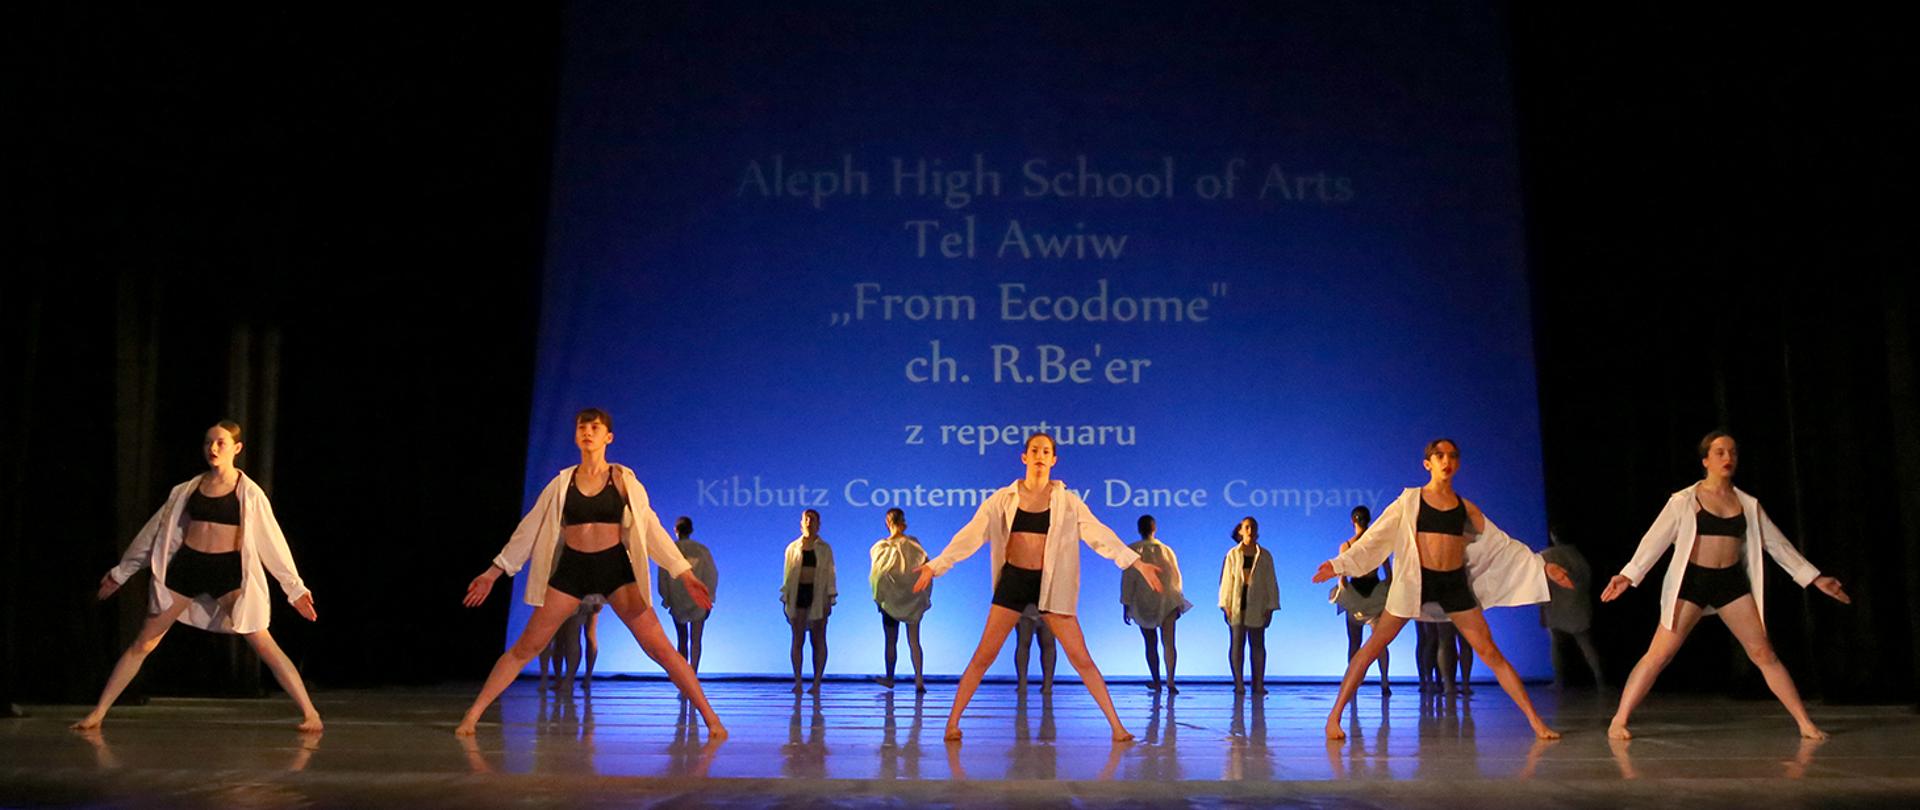 Tancerze i tancerki w układzie tanecznym na scenie, w tle na niebieskim podświetleniu tytuł spektaklu